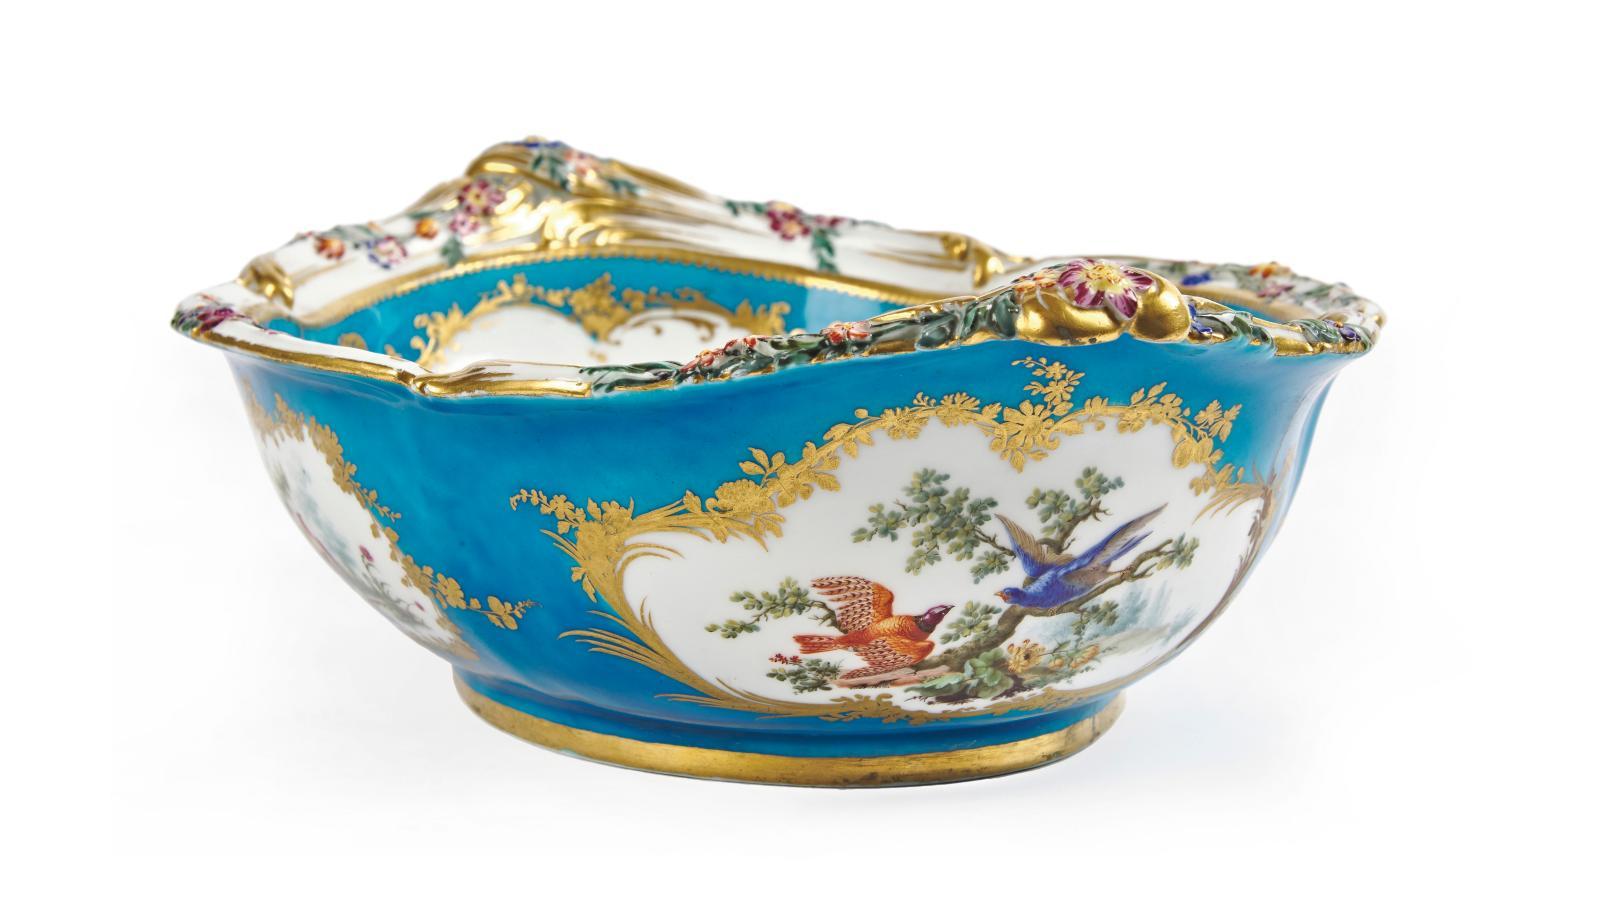 Manufacture de Vincennes XVIIIe siècle. Bassin à fleurs de relief en porcelaine tendre... Une porcelaine de Sèvres diplomatique